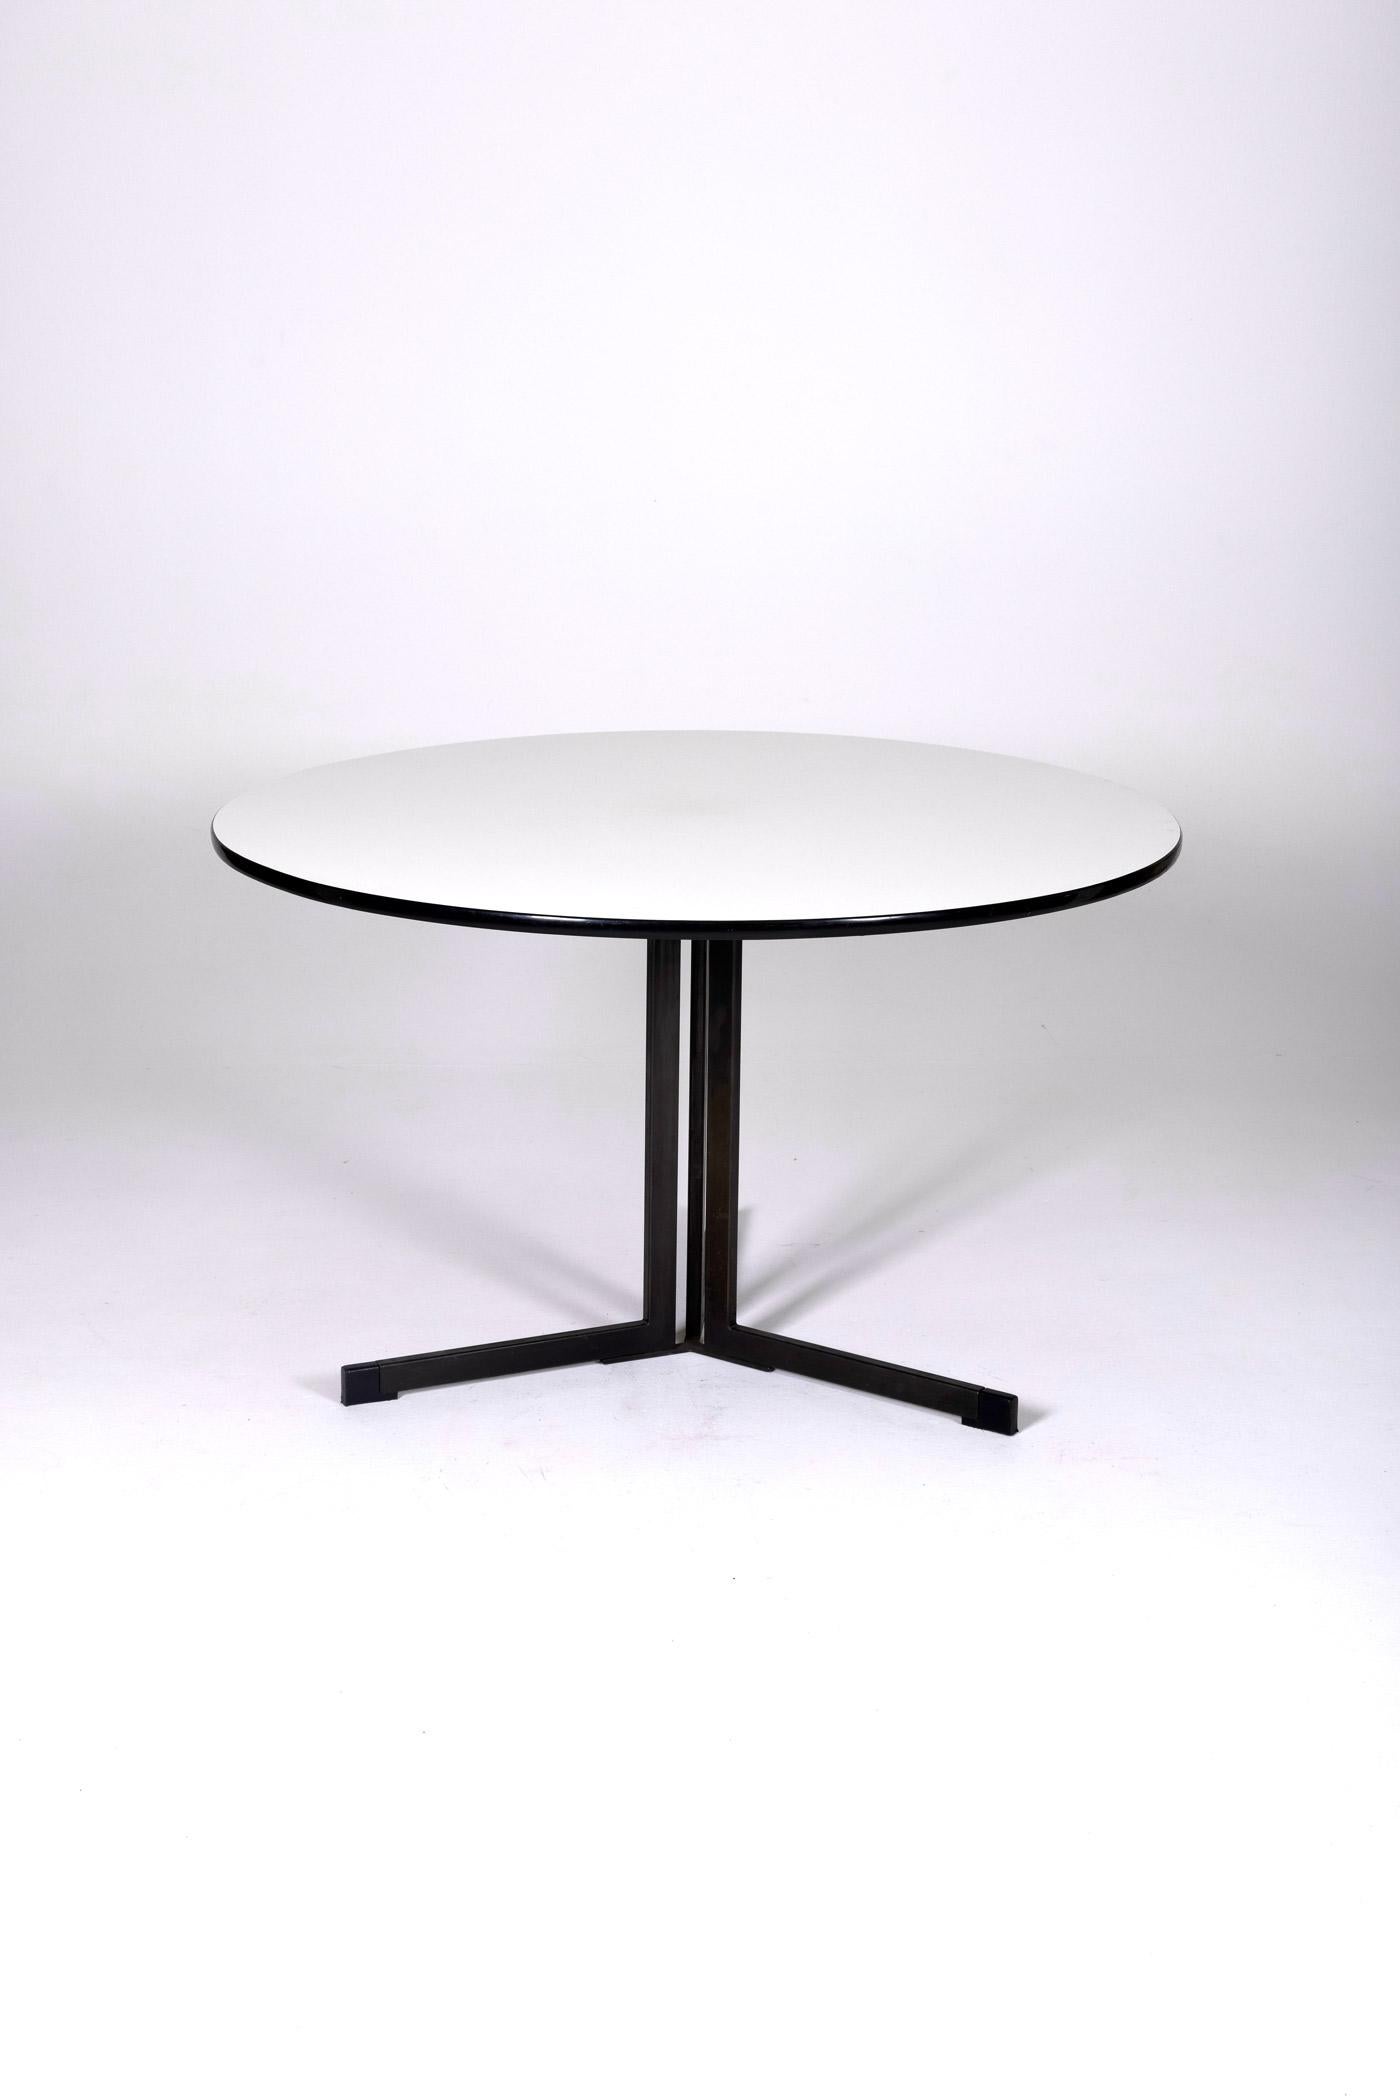 Table de salle à manger ronde, modèle AP103, du designer néerlandais Hein Salomonson, publiée par Ap Originals dans les années 1950. Le plateau est en mélamine blanche et la base est en métal laqué noir. En très bon état.
DV188